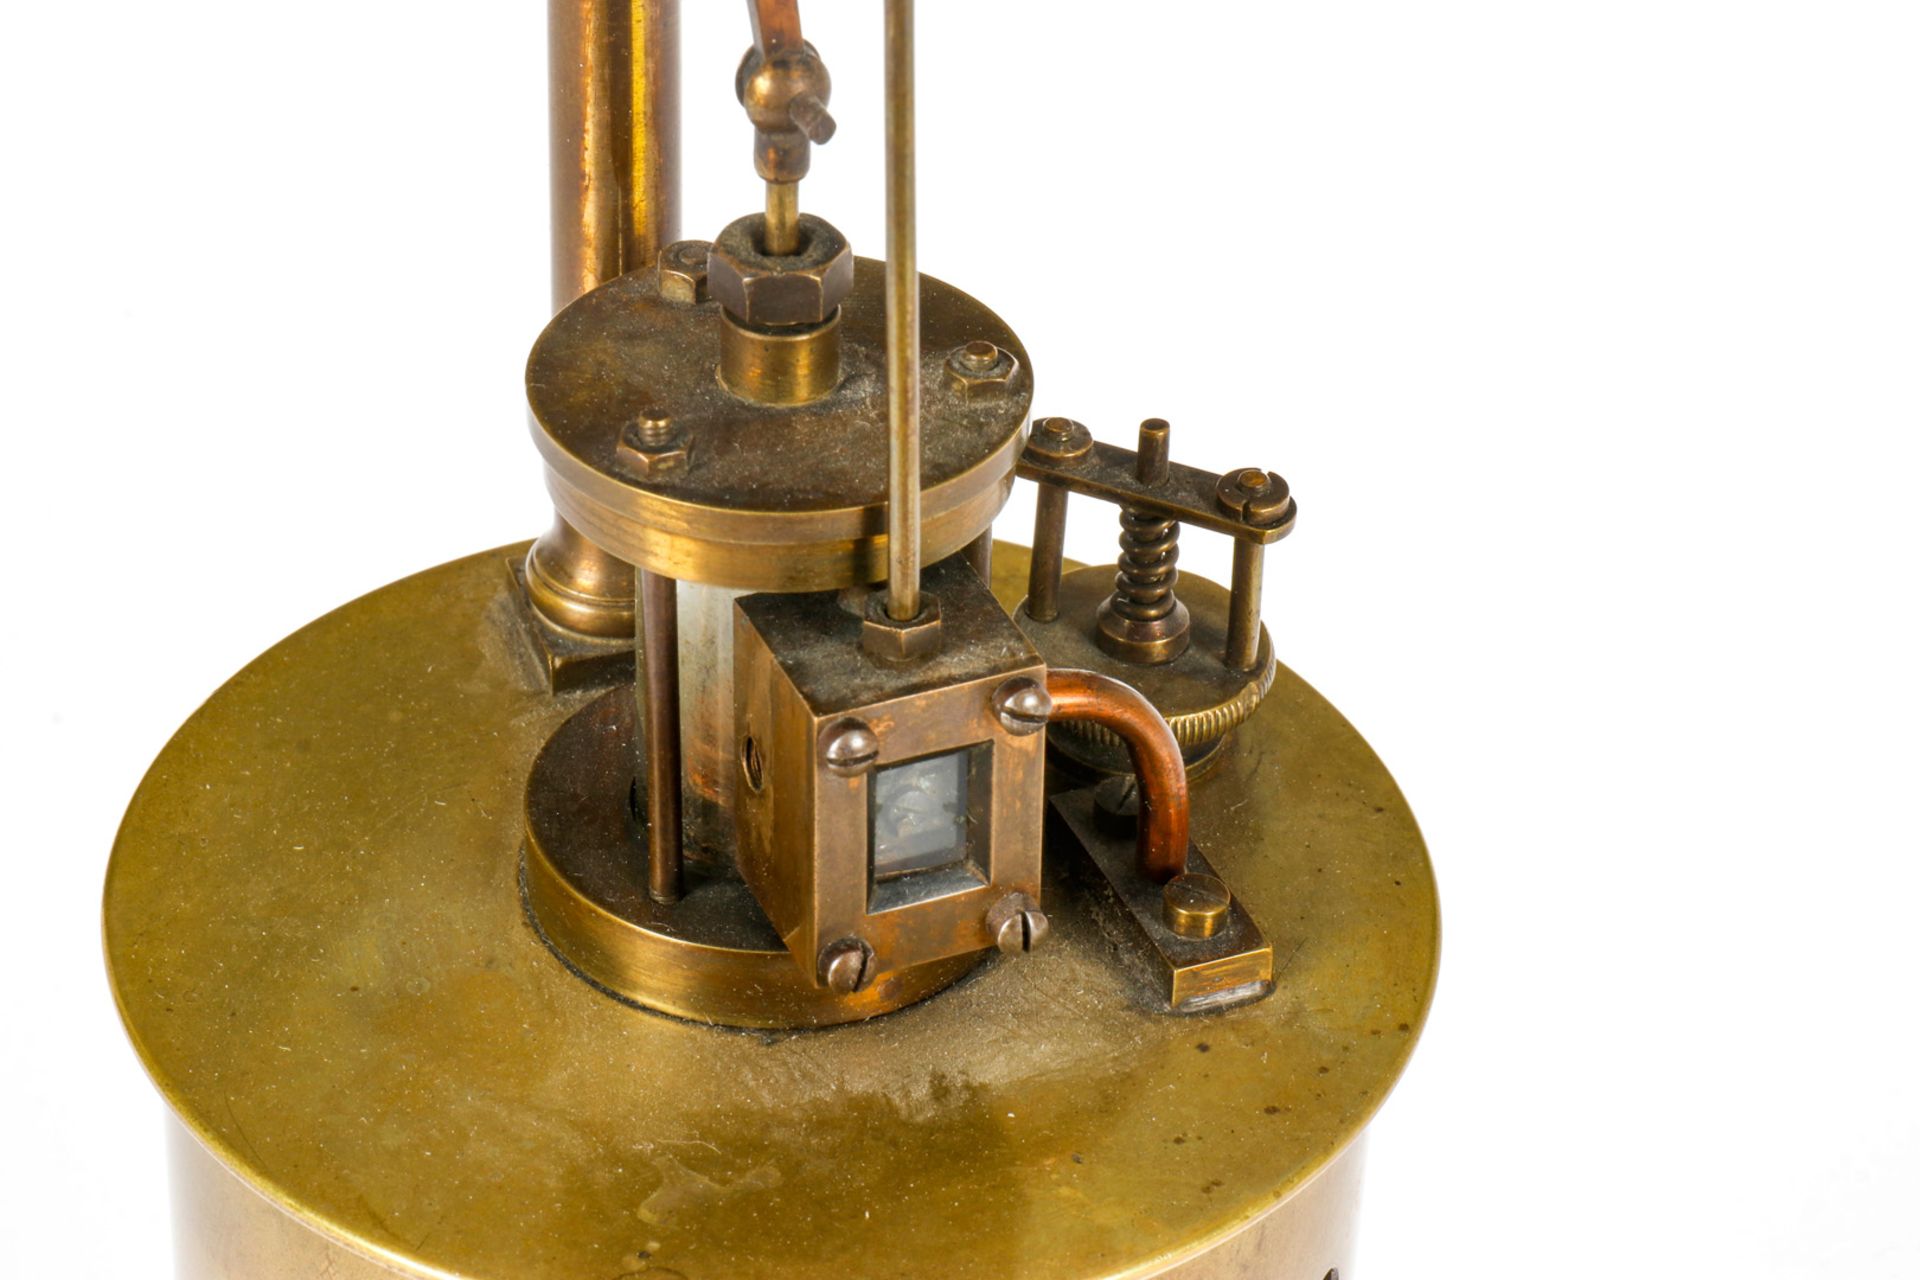 Radiguet stehende Dampfmaschine, Messingausführung, uralt, mit stehendem Glaszylinder, mit - Image 3 of 3